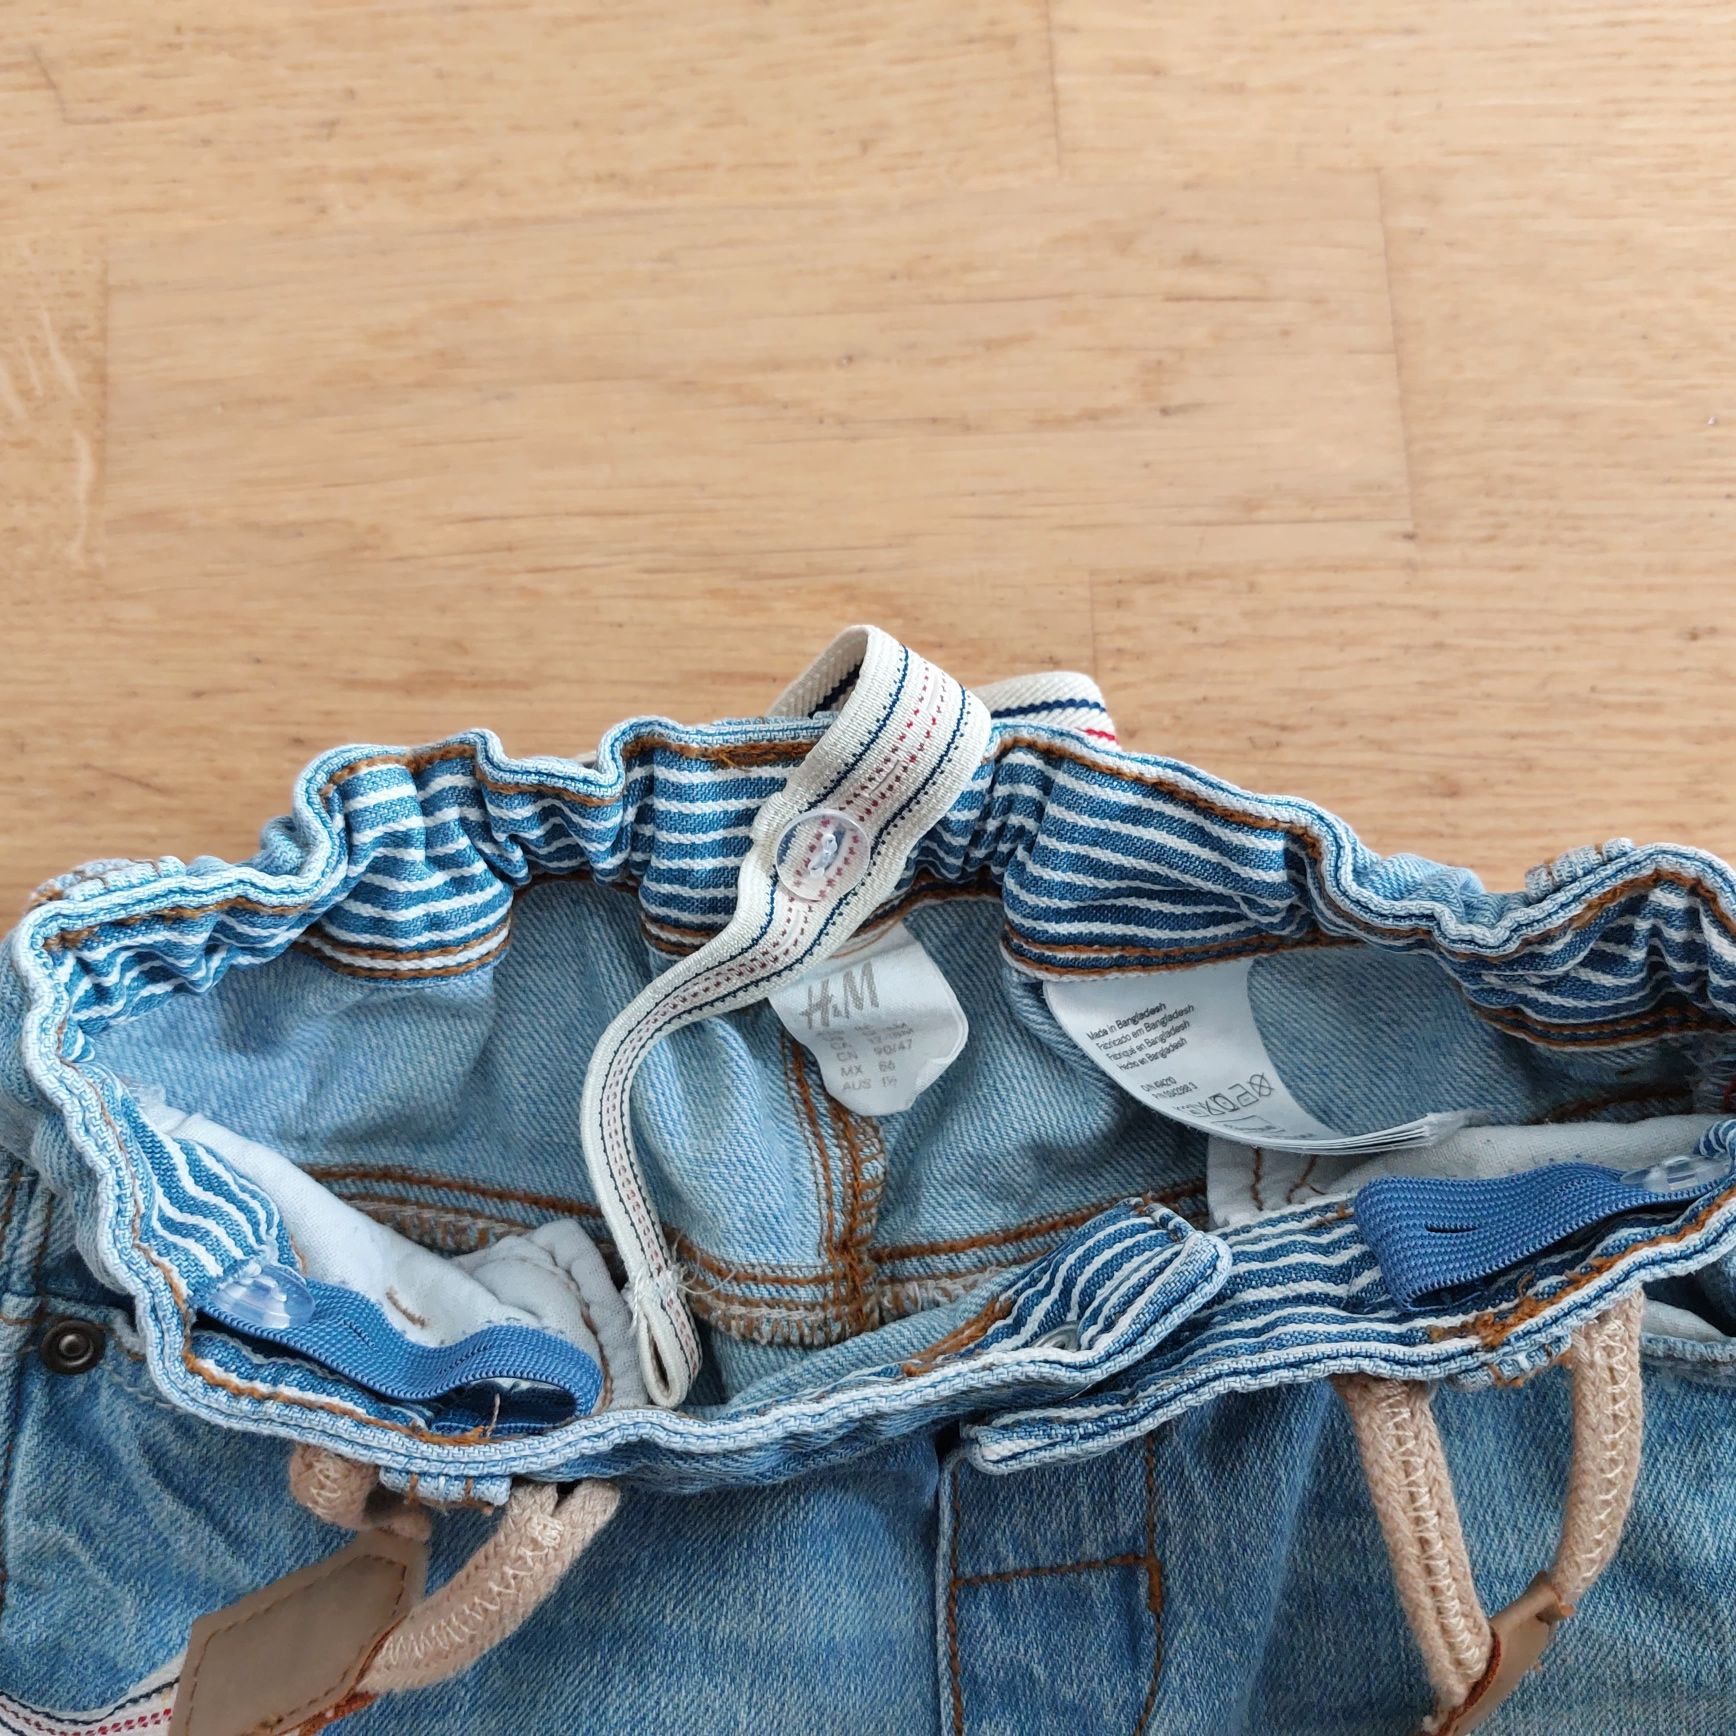 H&M spodnie jeansy z szelkami rozm. 86 12-18 miesięcy stan idealny